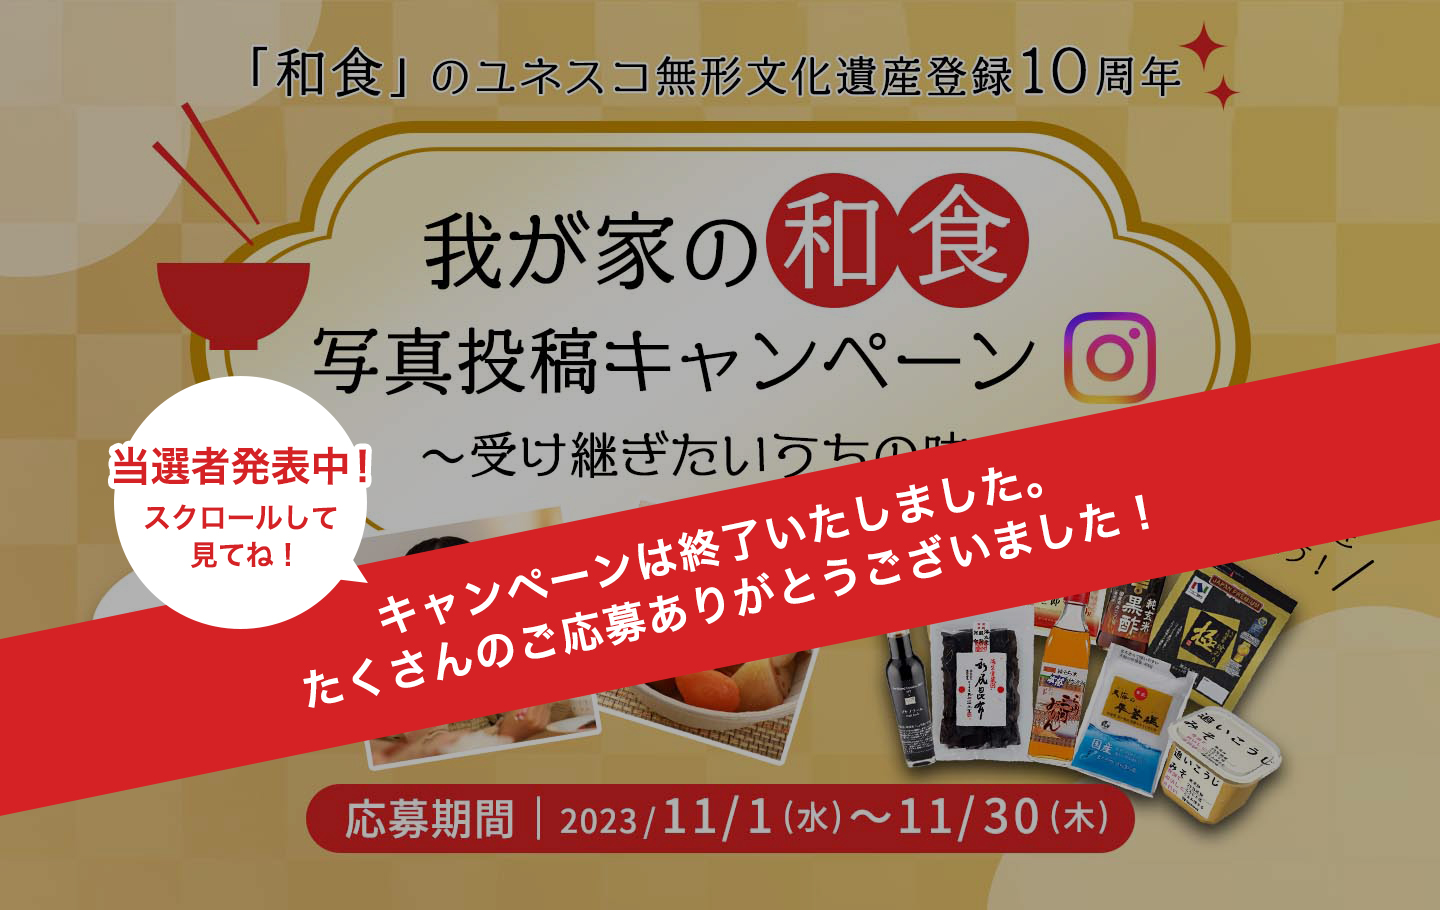 11月24日和食の日 我が家の和食写真投稿キャンペーン